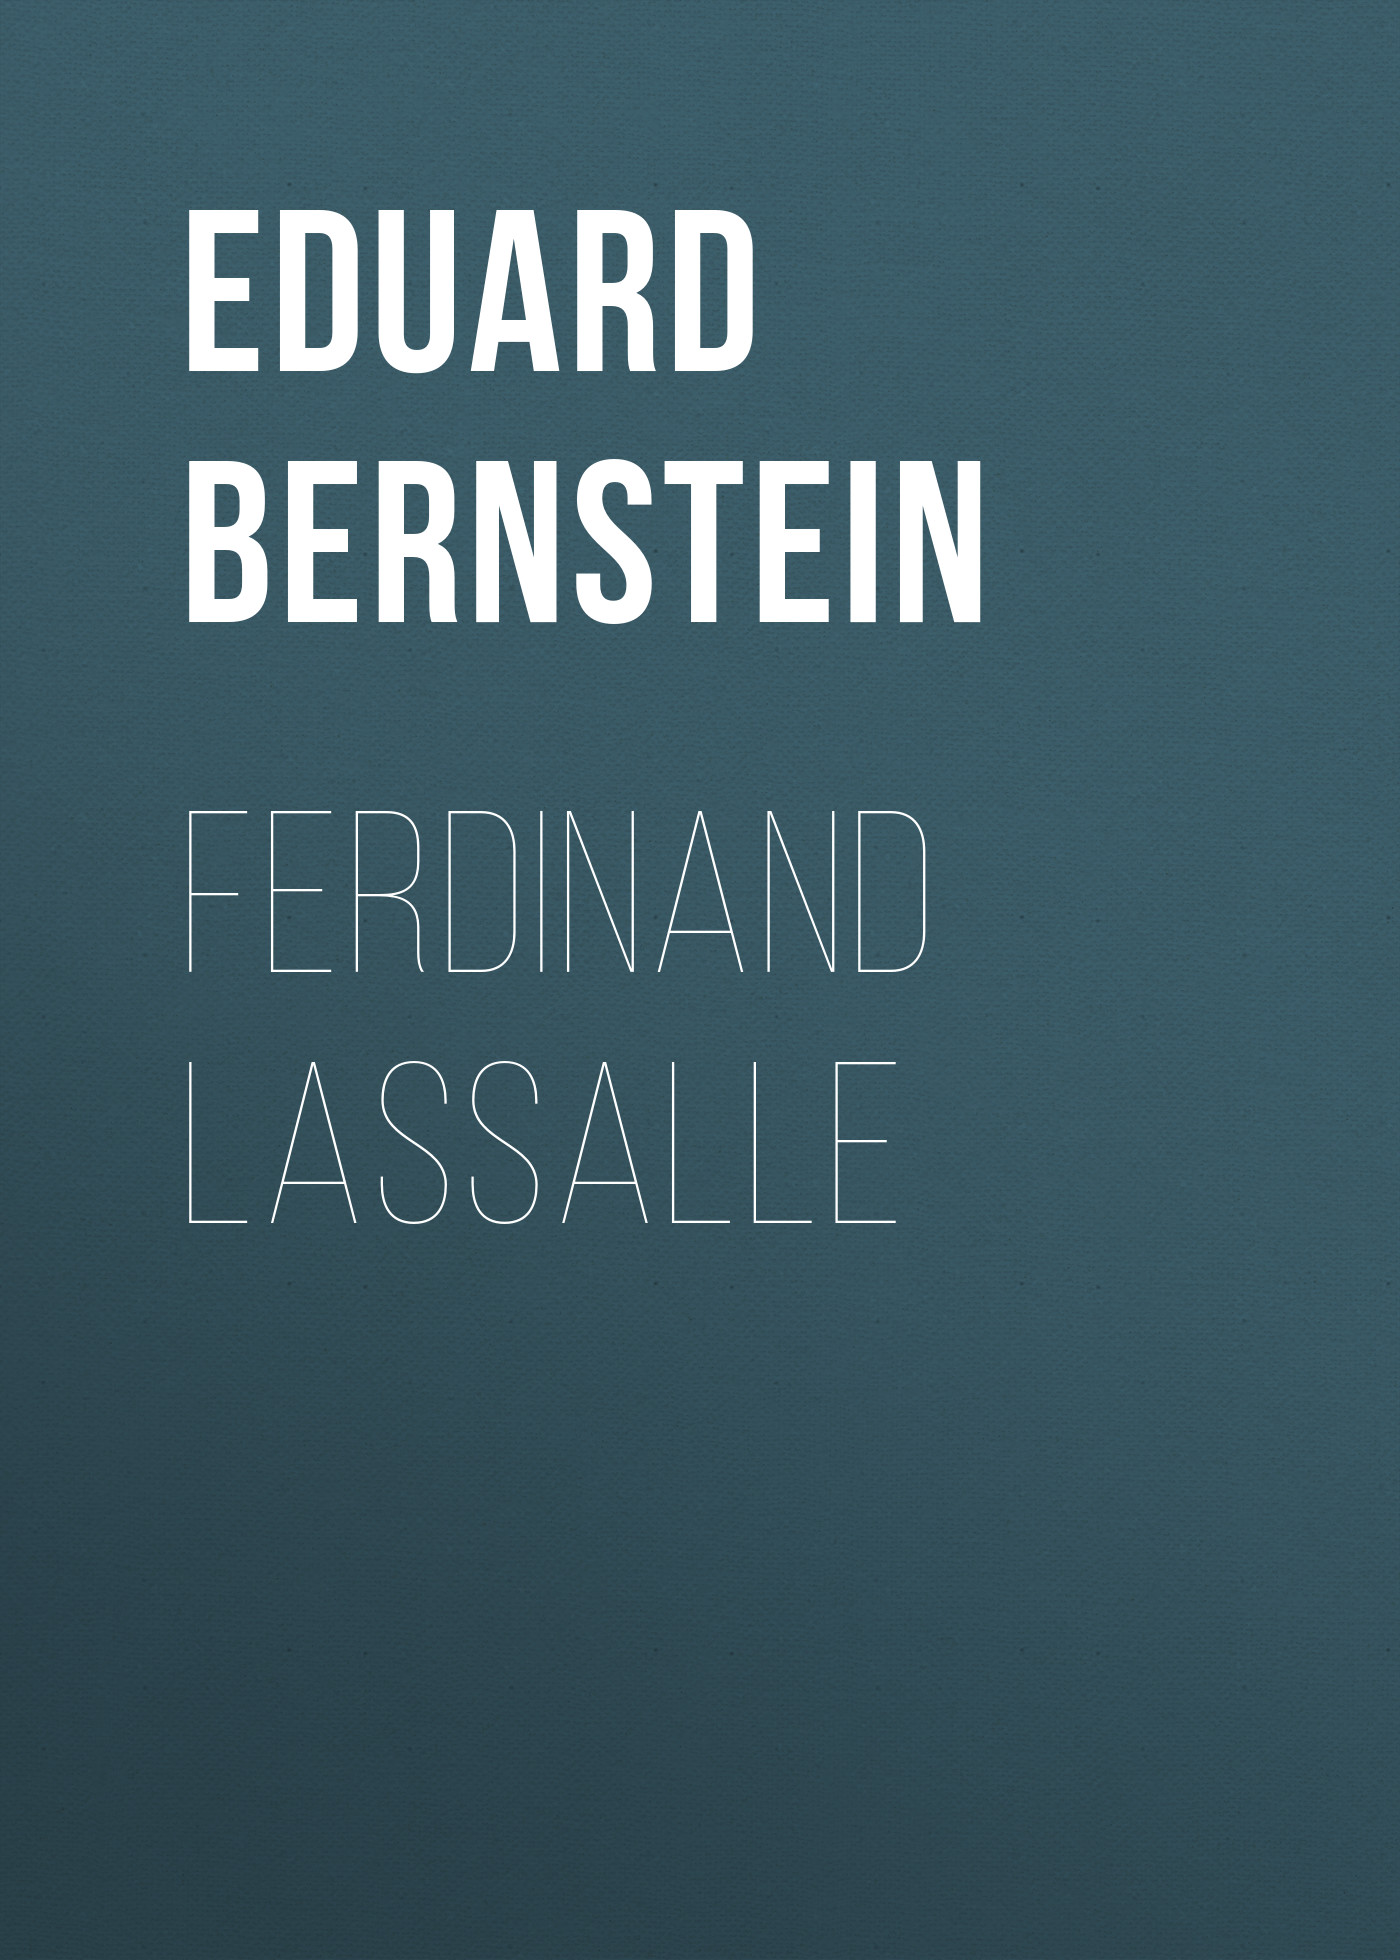 Книга Ferdinand Lassalle из серии , созданная Eduard Bernstein, может относится к жанру Зарубежная старинная литература, Зарубежная классика. Стоимость электронной книги Ferdinand Lassalle с идентификатором 24173700 составляет 0 руб.